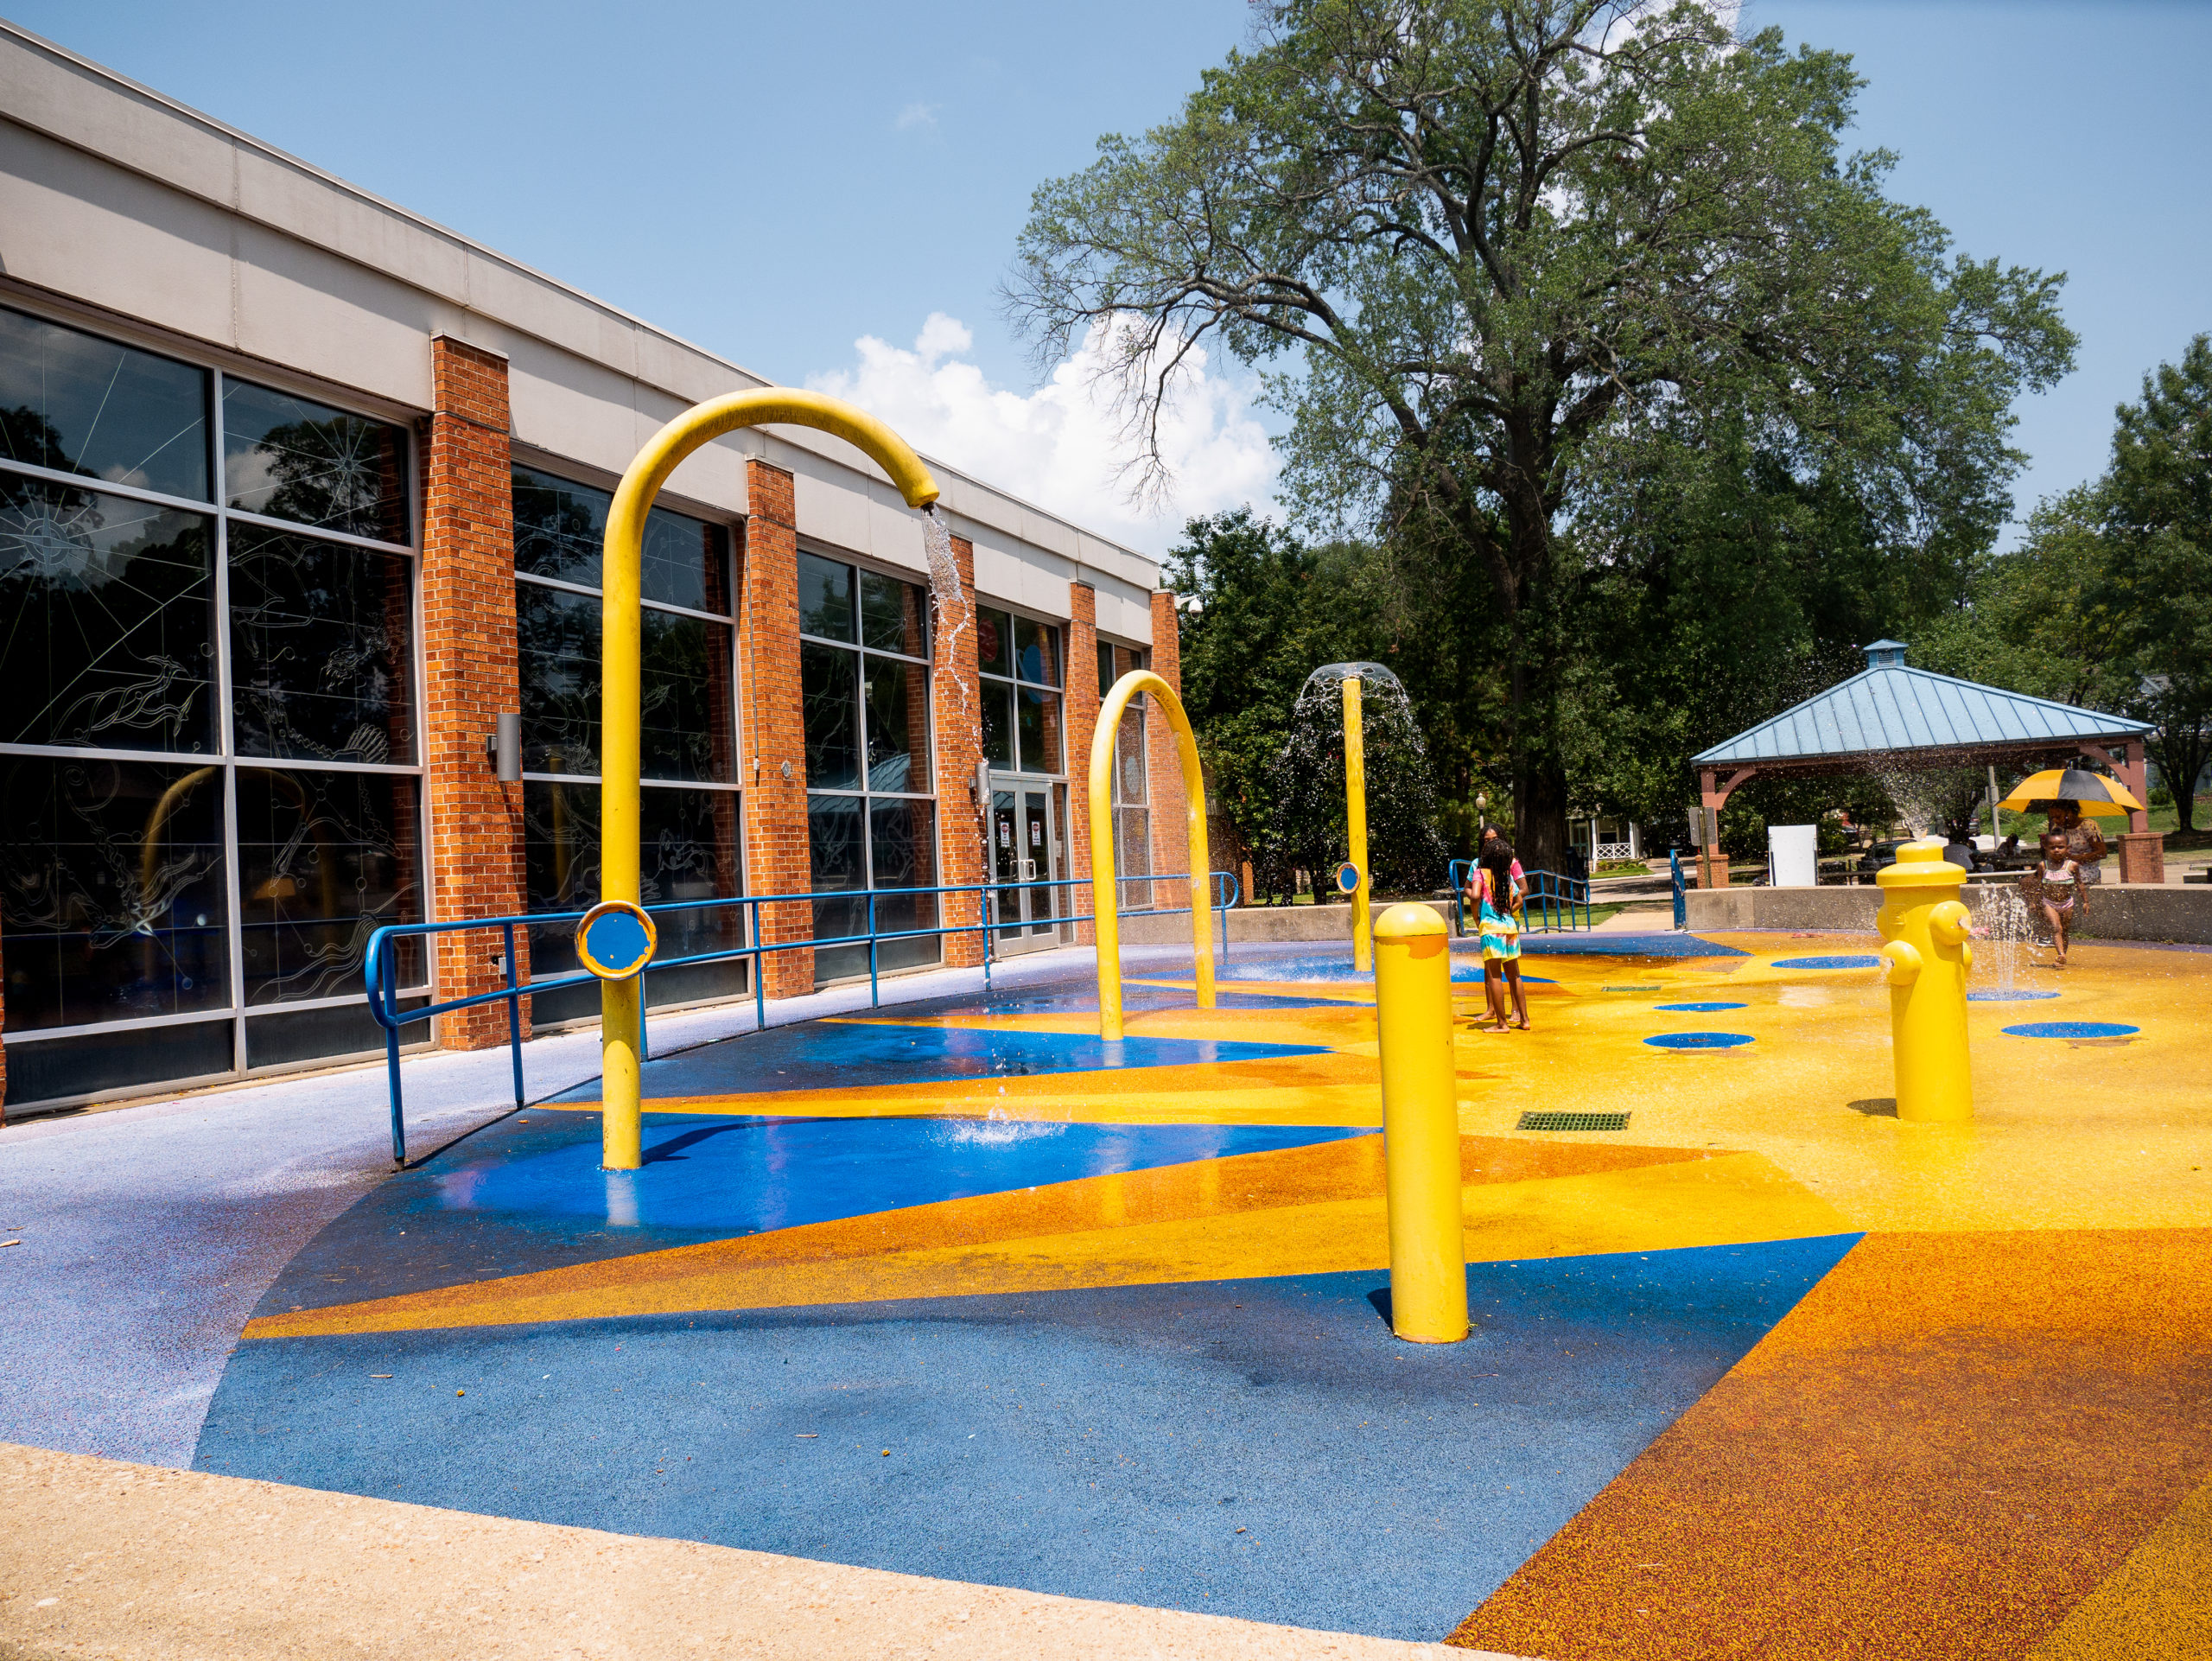 Colorful Memphis Splash Pad located in Peabody Park